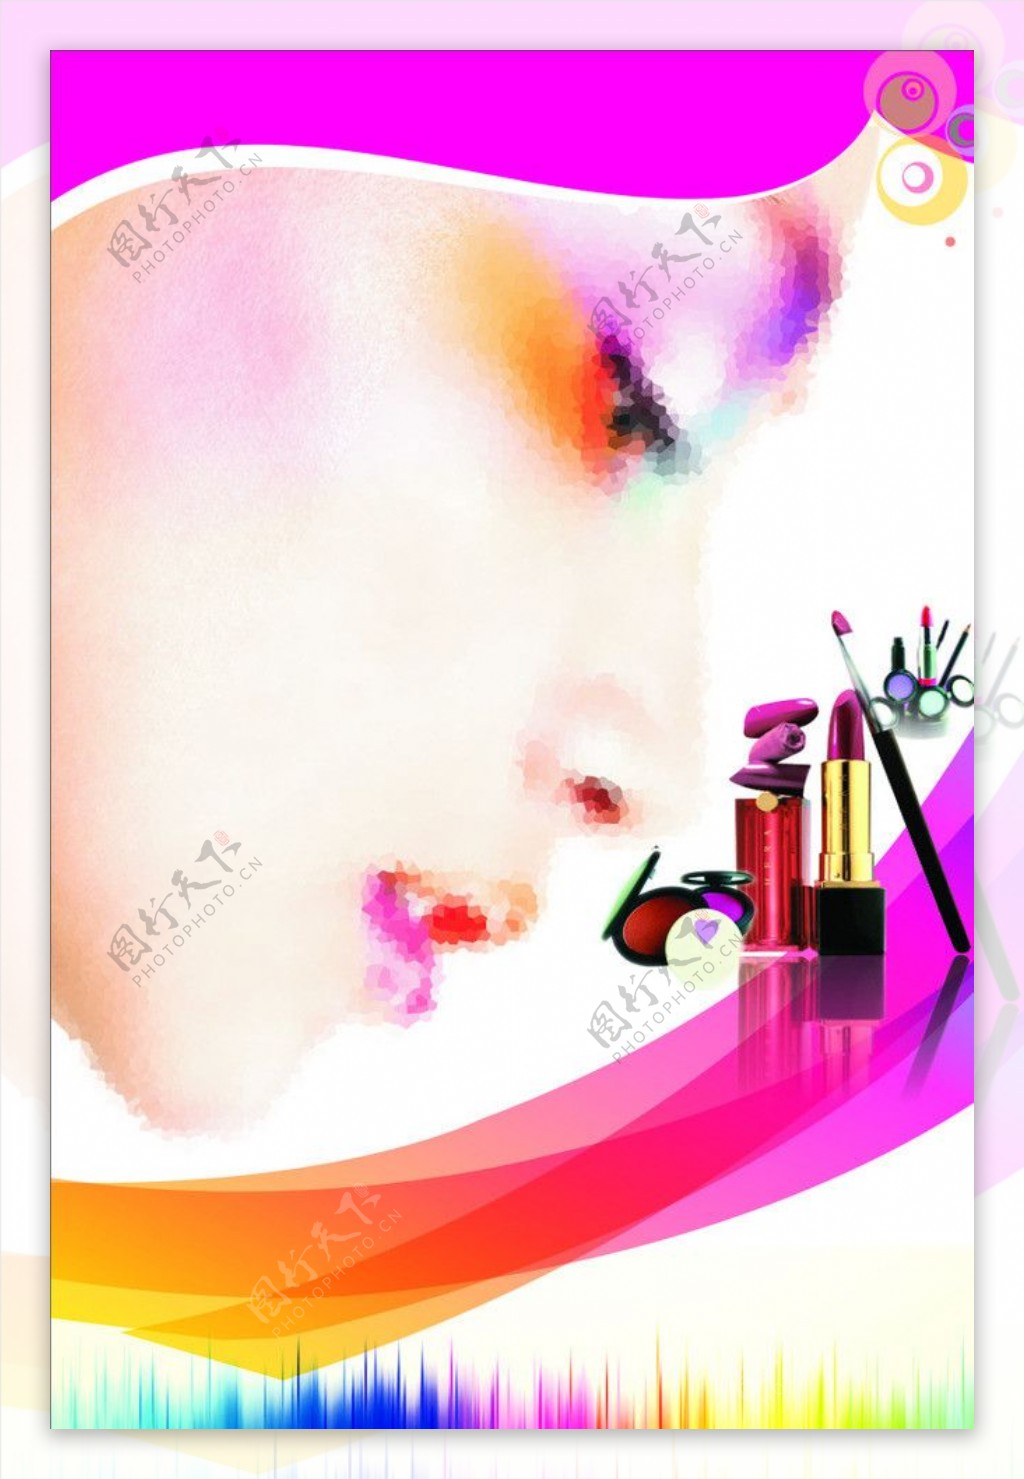 化妆室海报图片